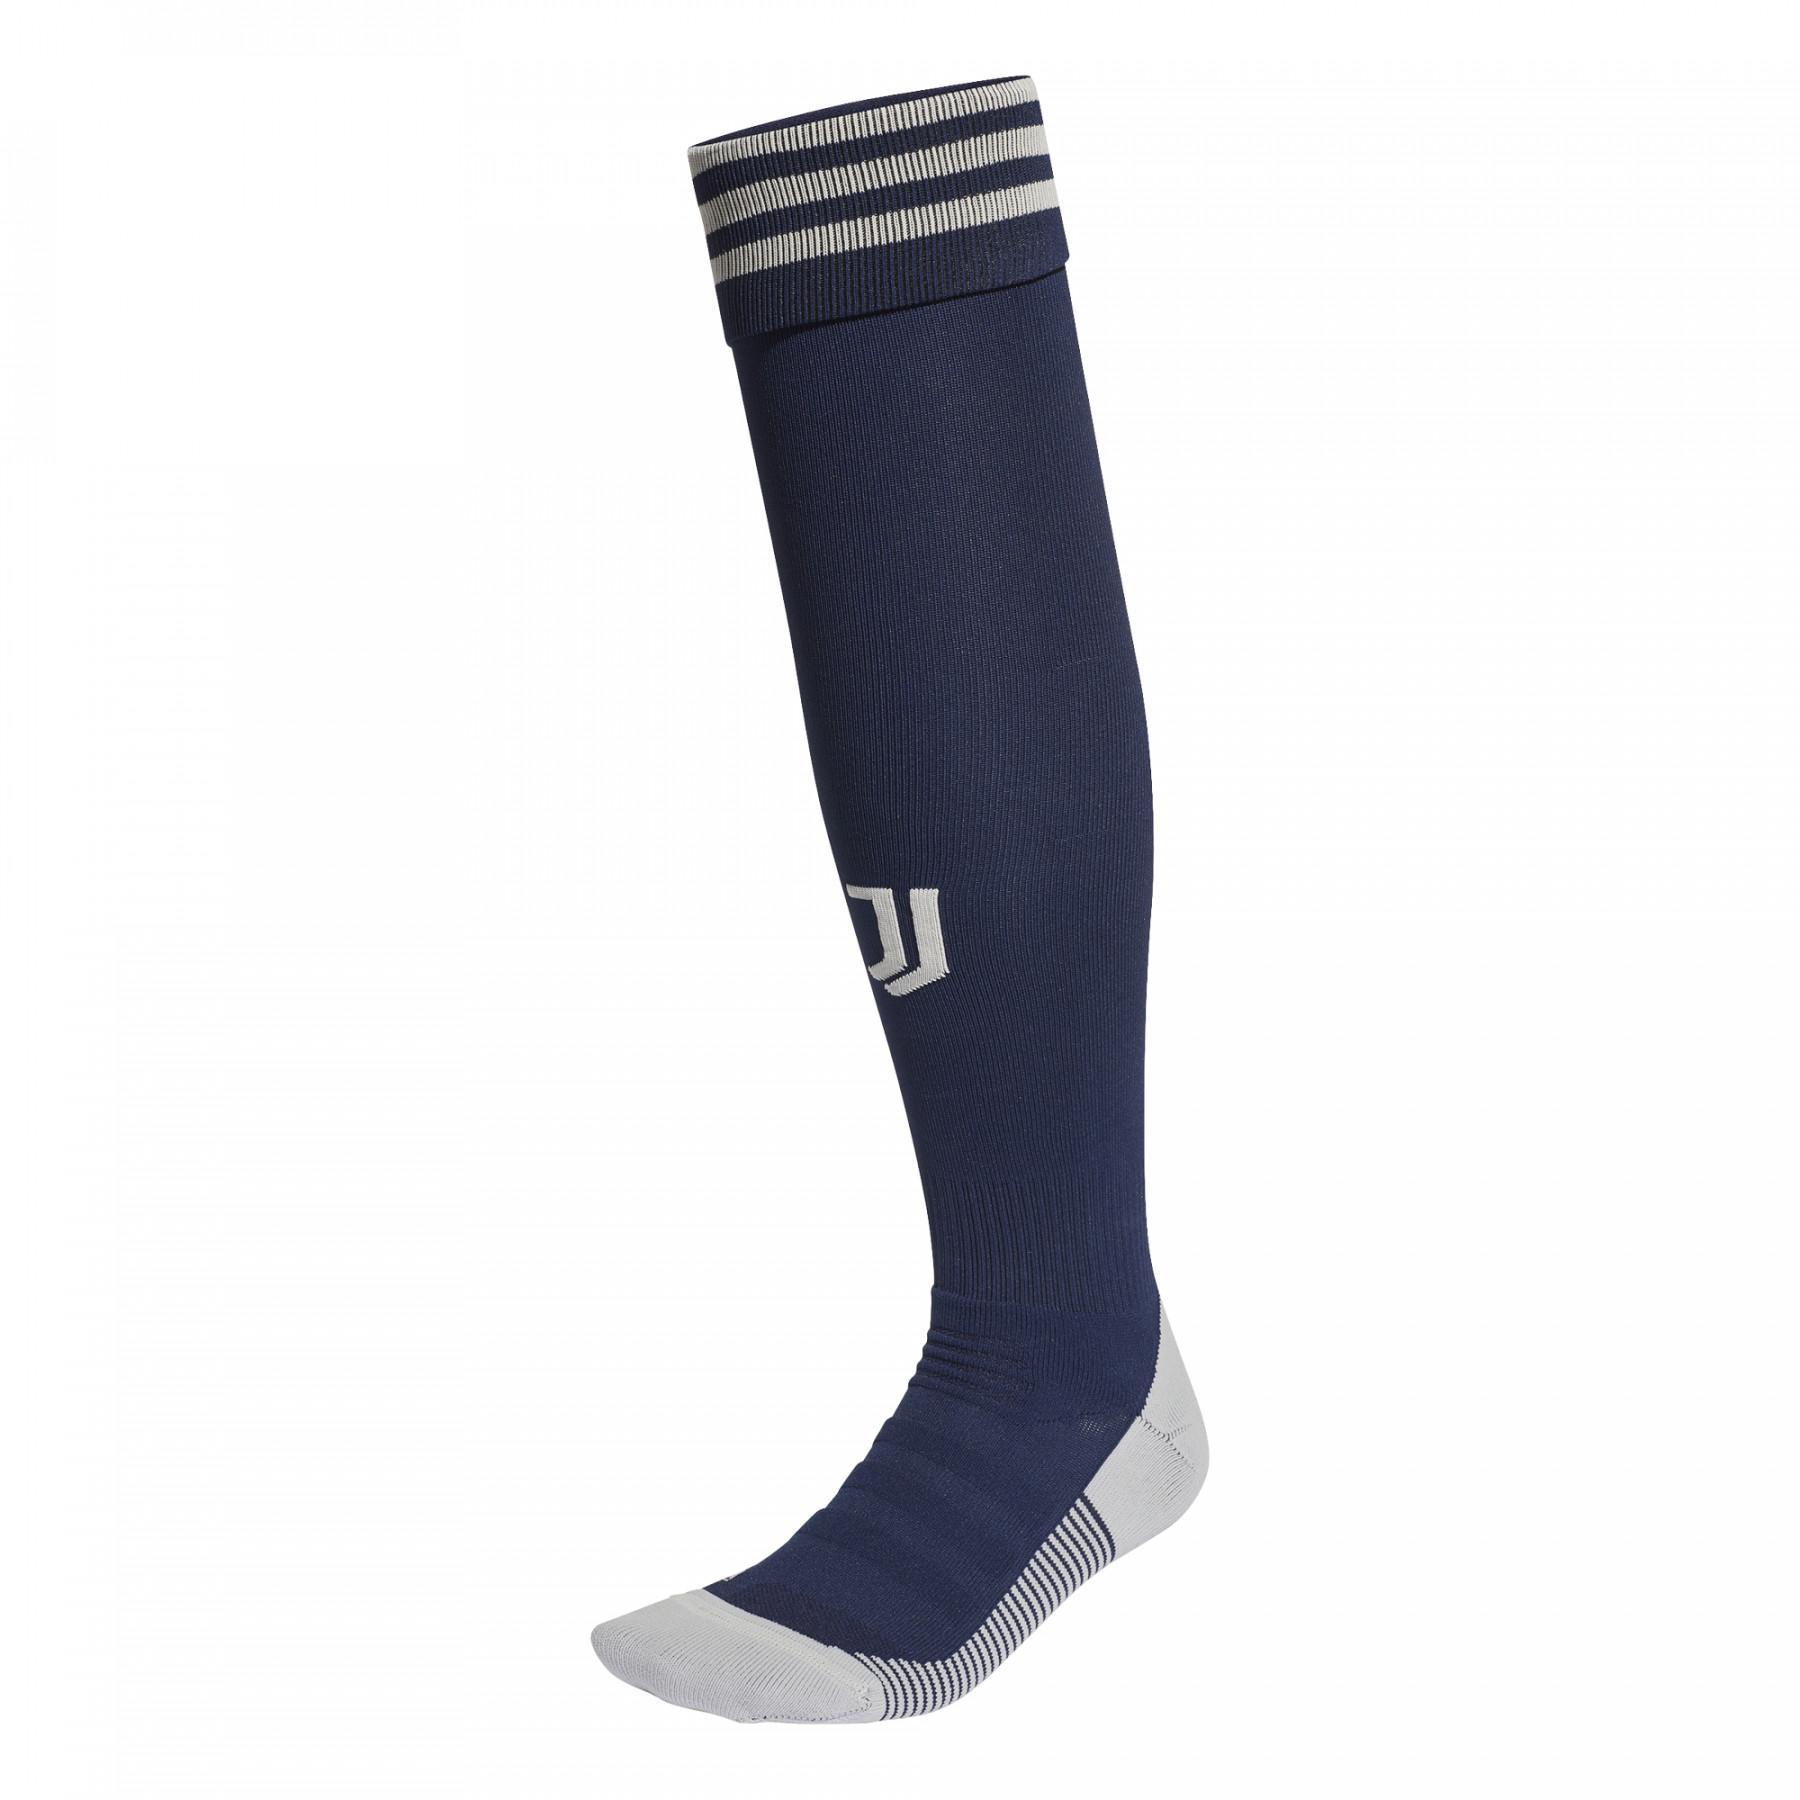 Outdoor sokken Juventus 2020/21